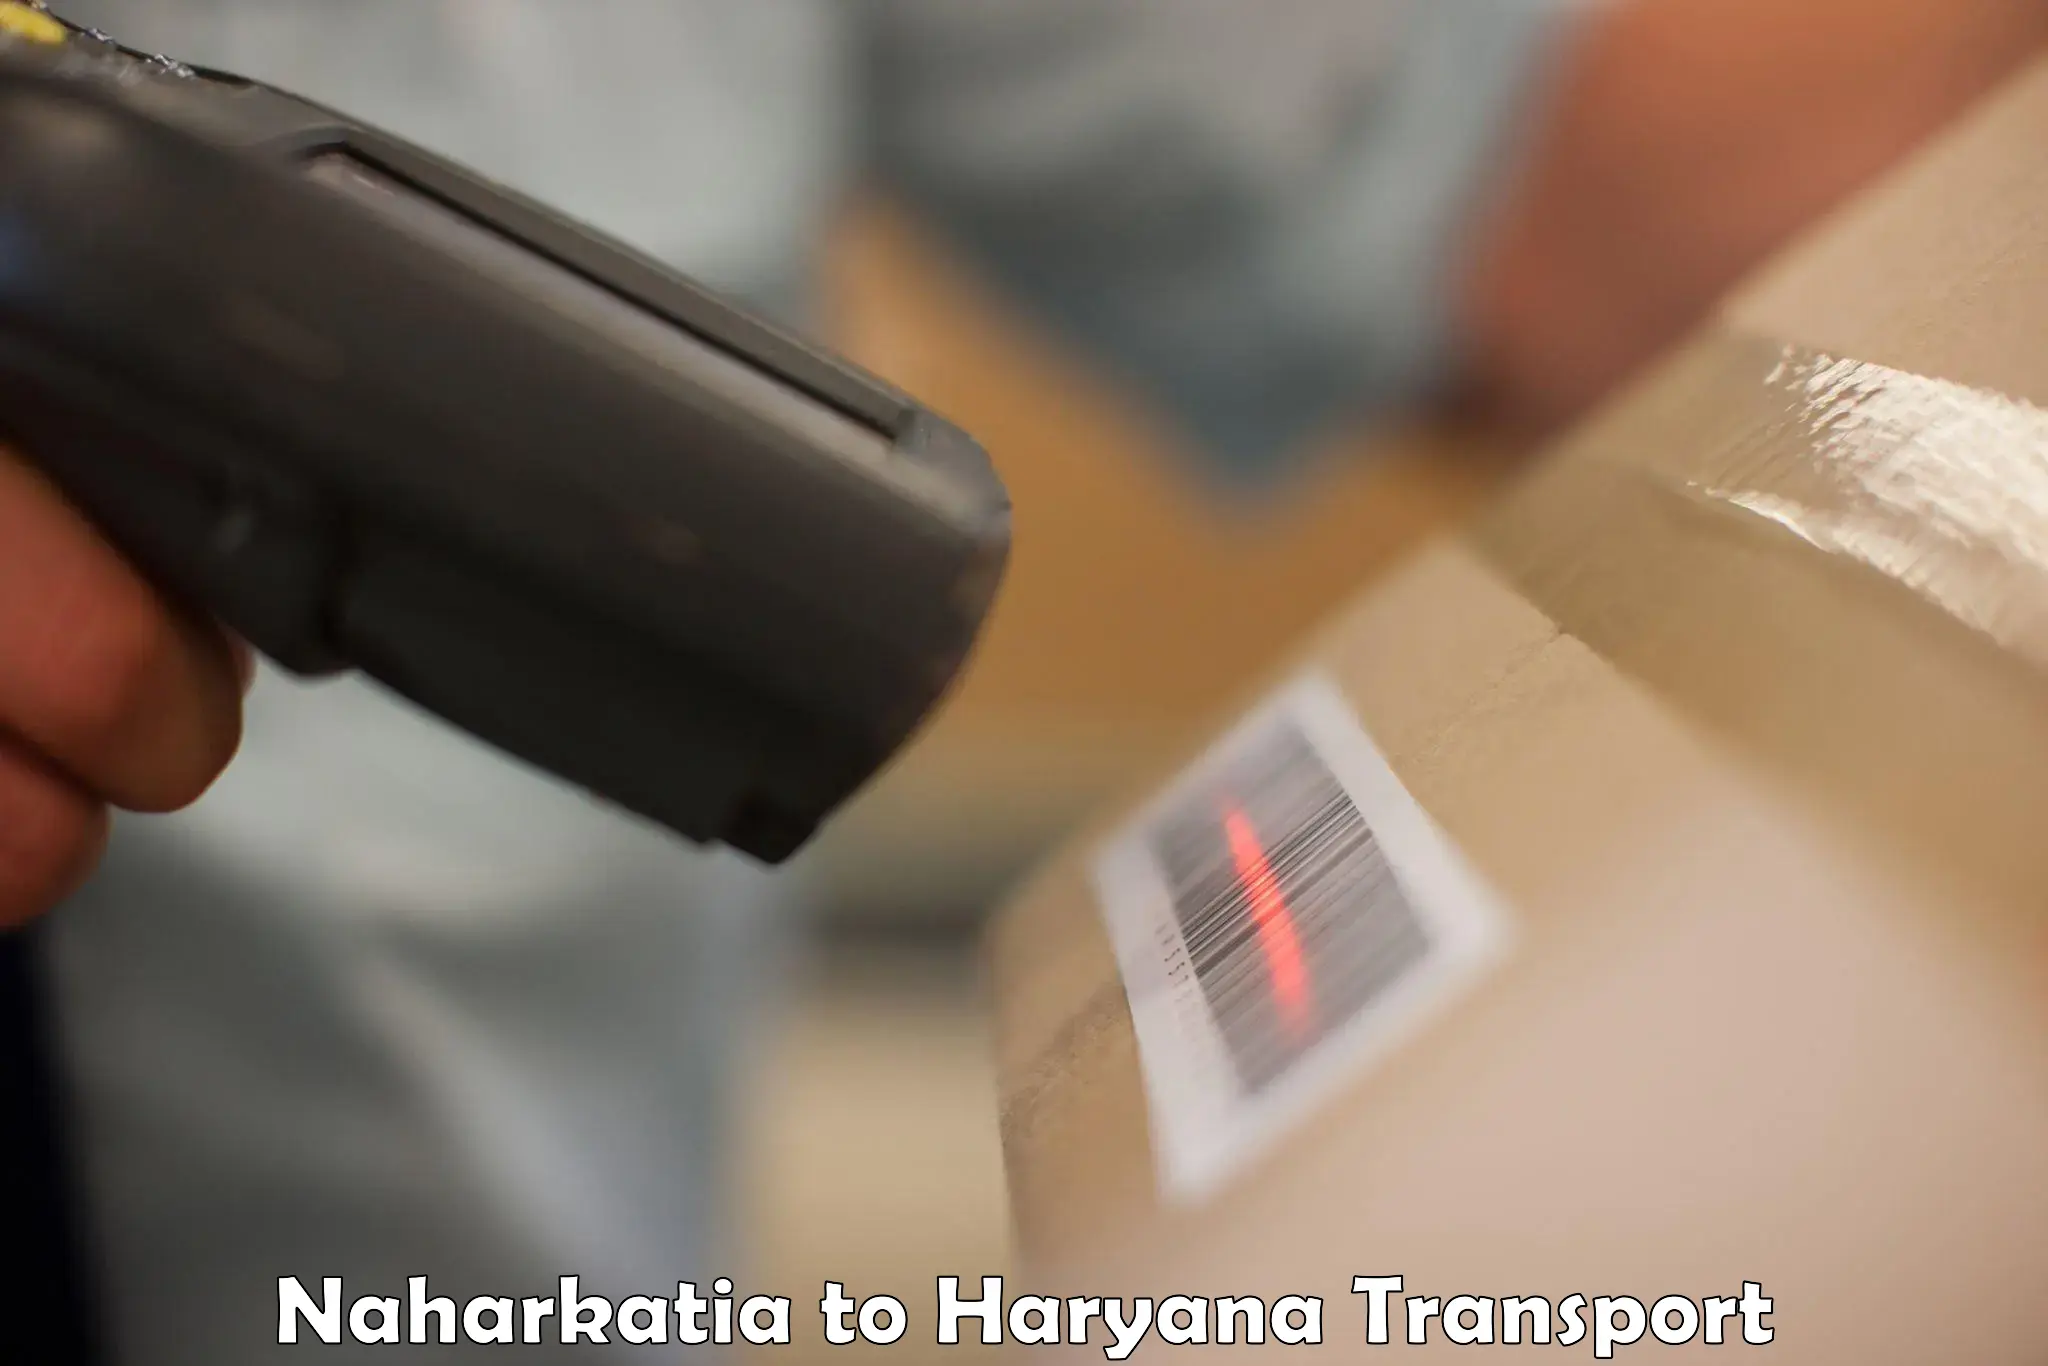 Transport in sharing in Naharkatia to Bilaspur Haryana